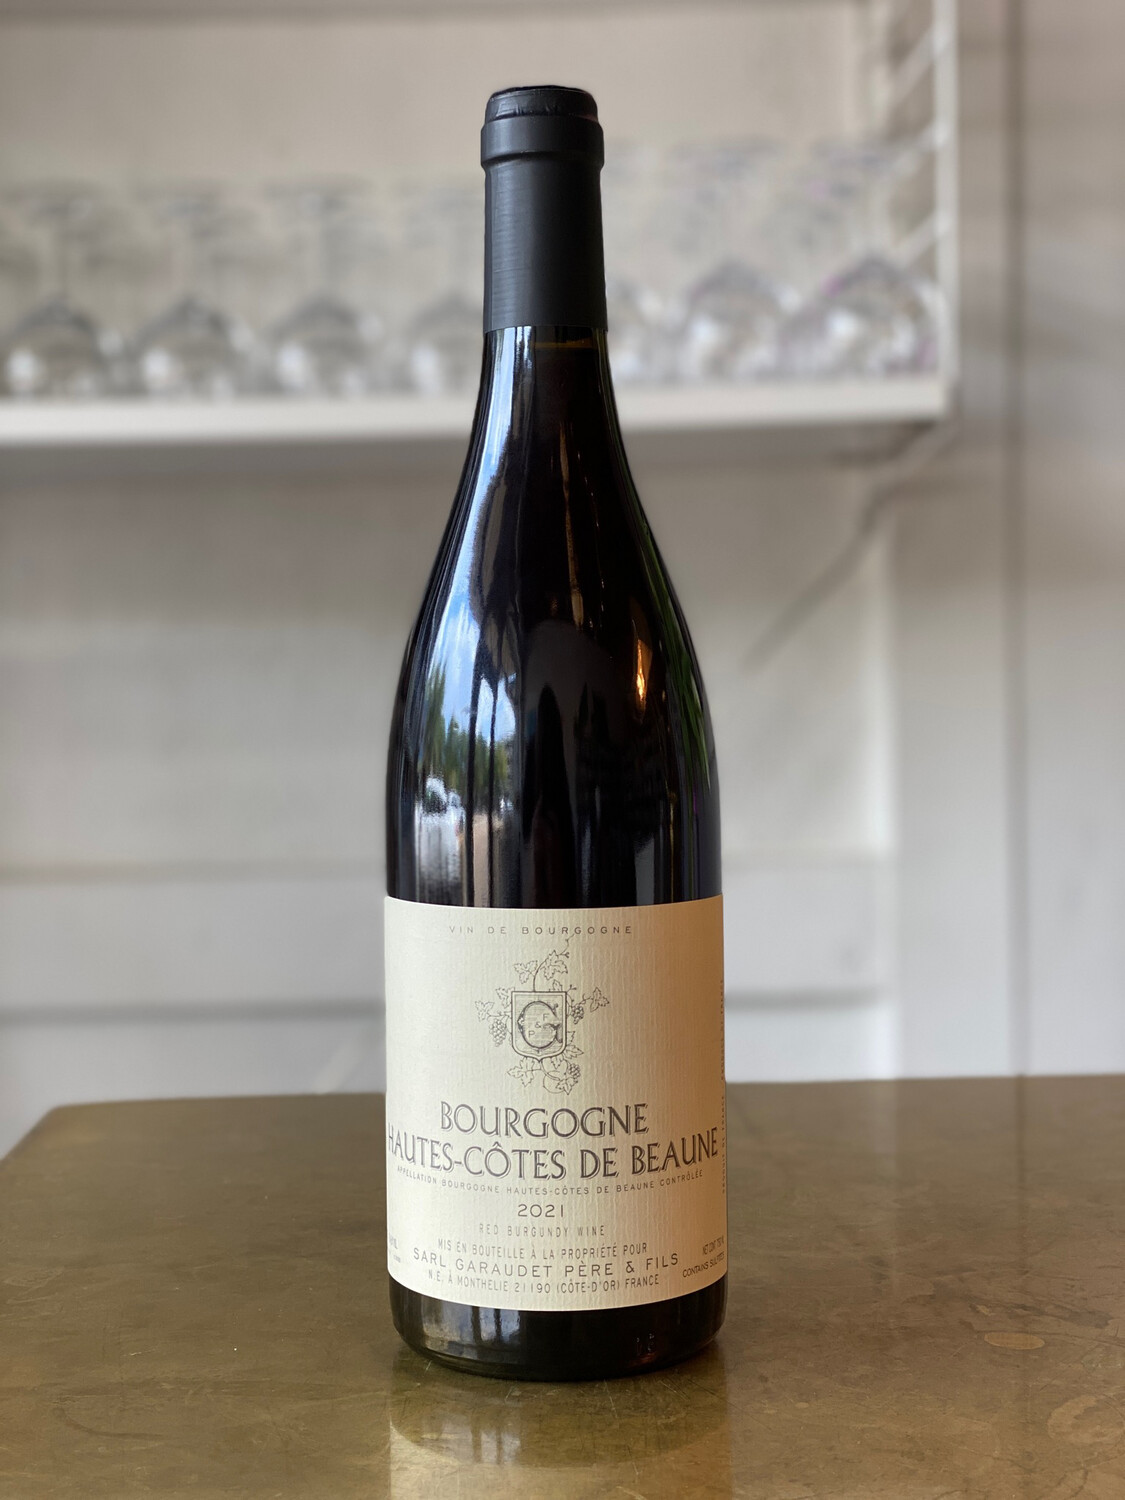 Garaudet Pere & Fils, Bourgogne Hautes Cotes de Beaune Rouge (2021)